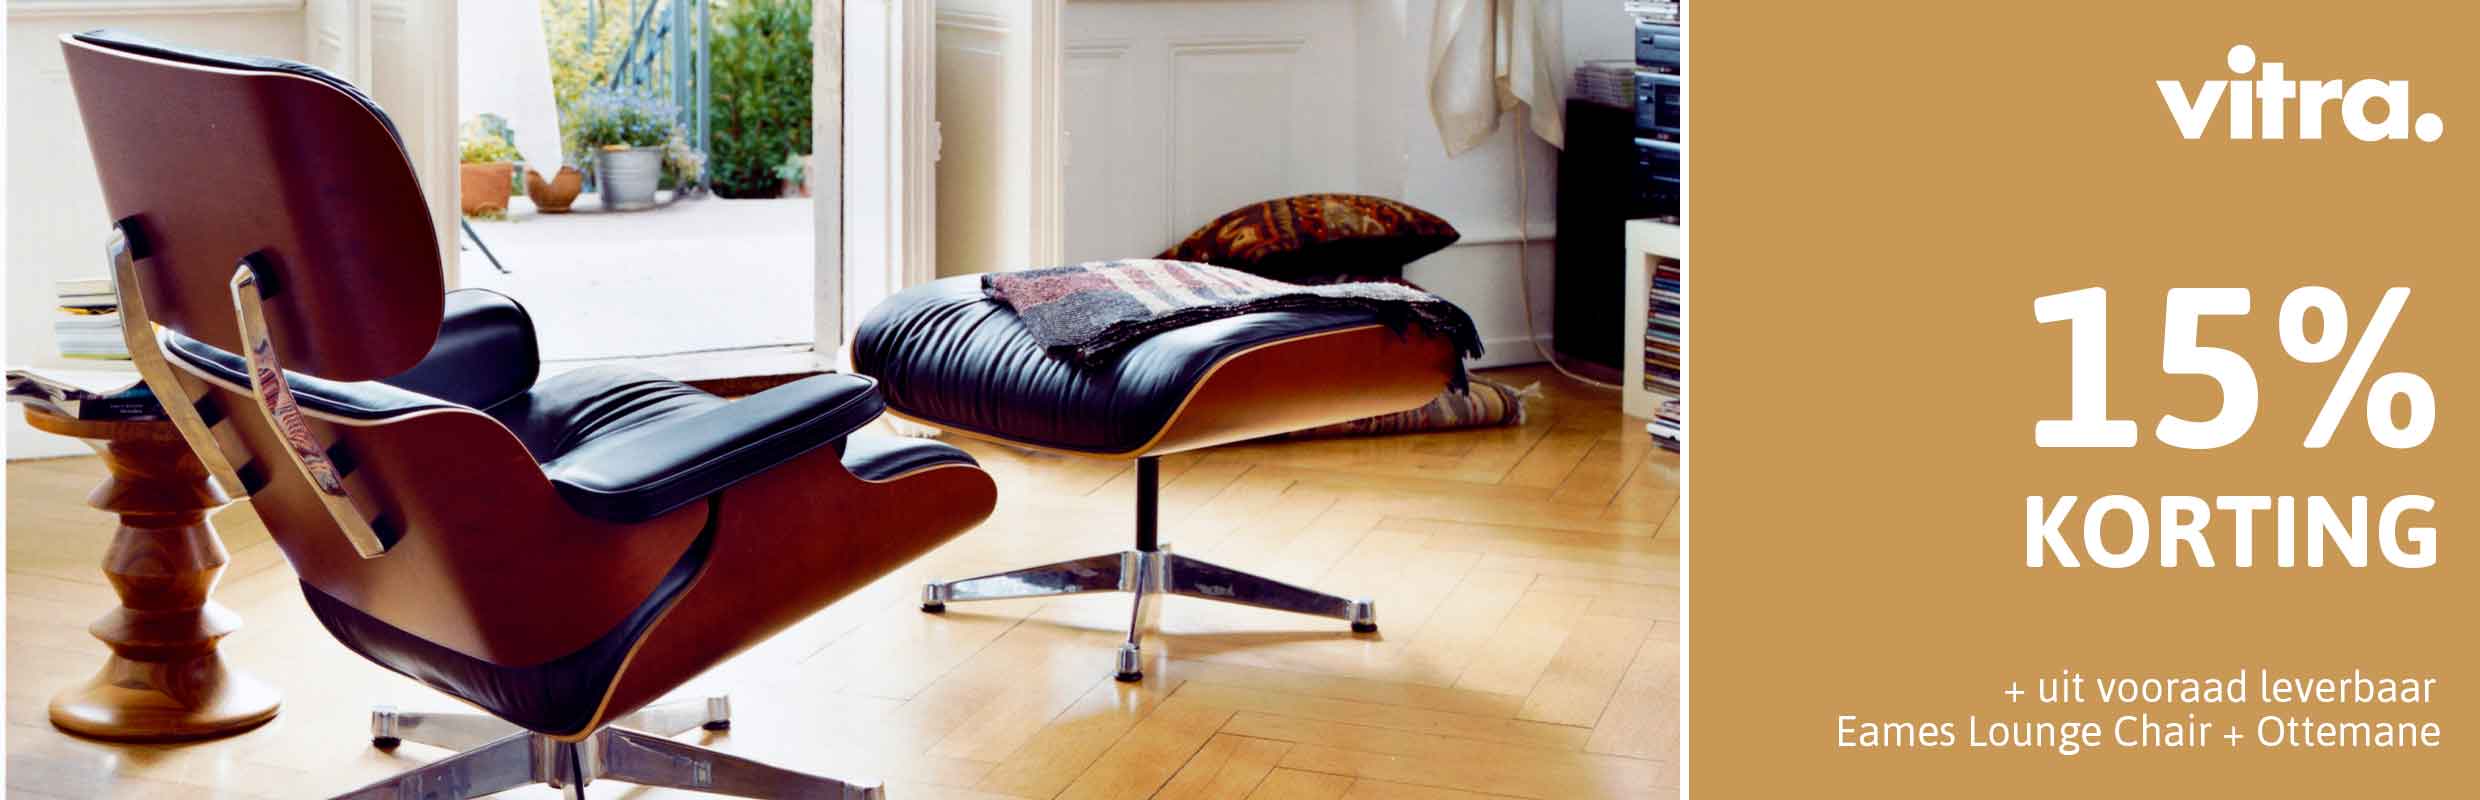 regiment Philadelphia Haringen Vitra Eames Lounge Chair uit voorraad leverbaar | Home Center